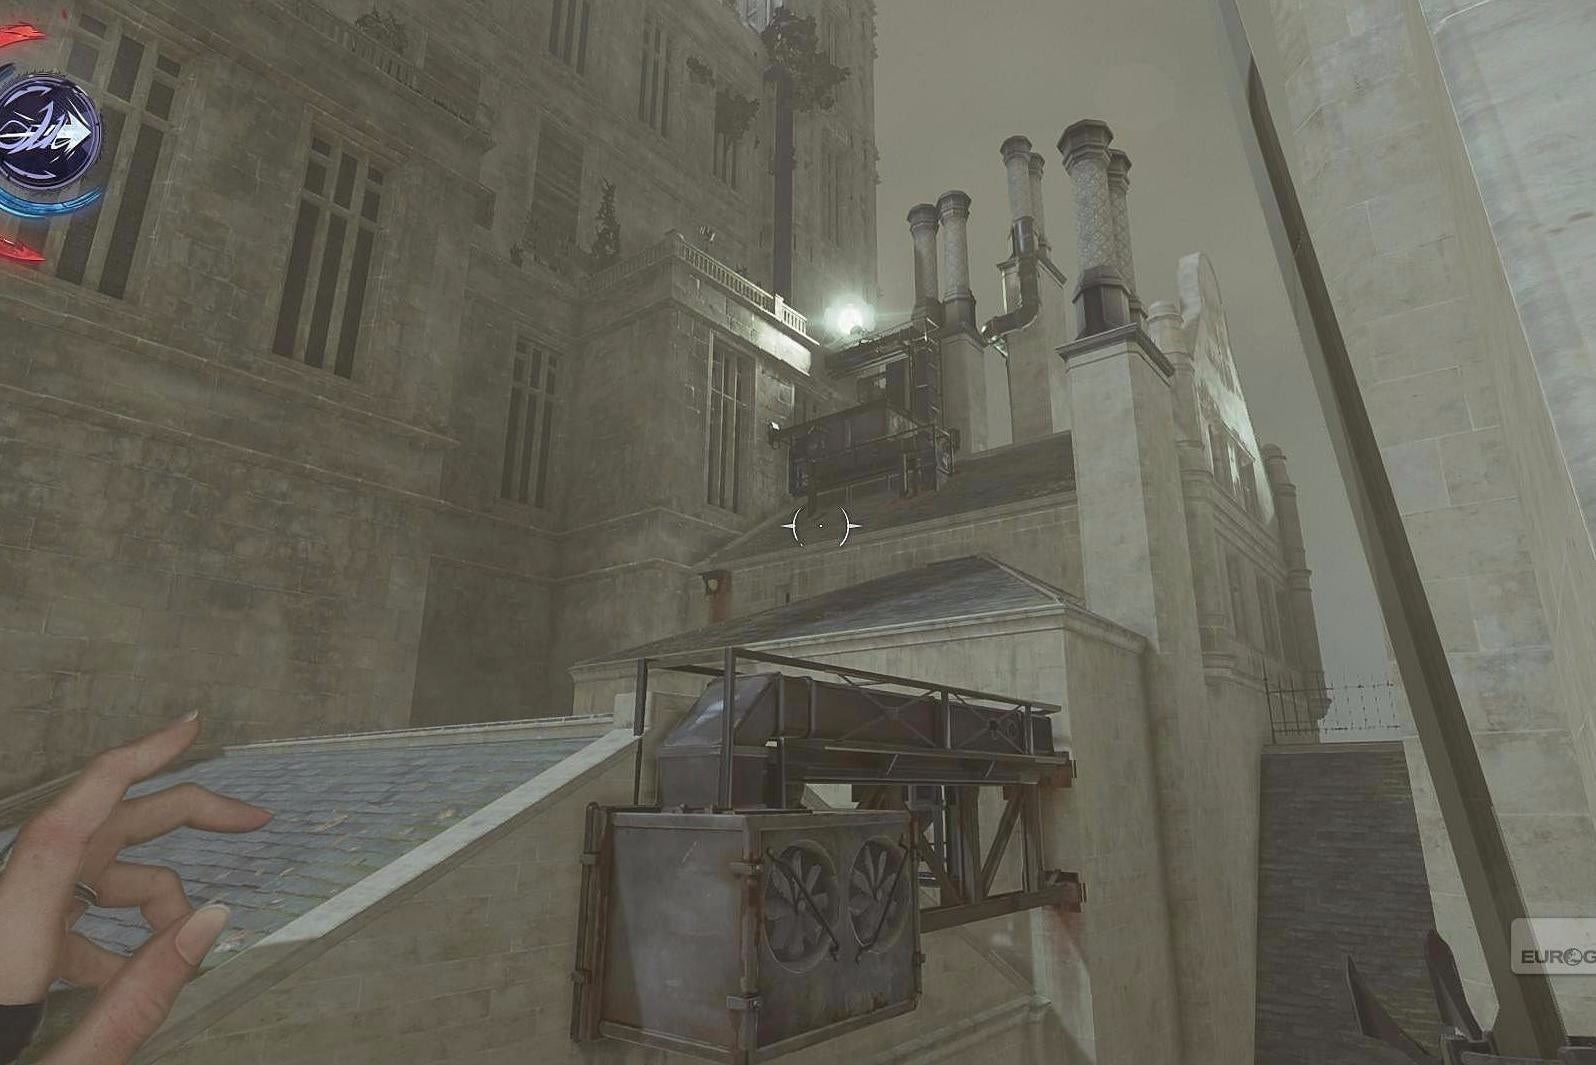 Obrazki dla Dishonored 2 - Misja 9: Śmierć Cesarzowej - czarnorynkowy sklep, ulice, przejście do Dunwall Tower